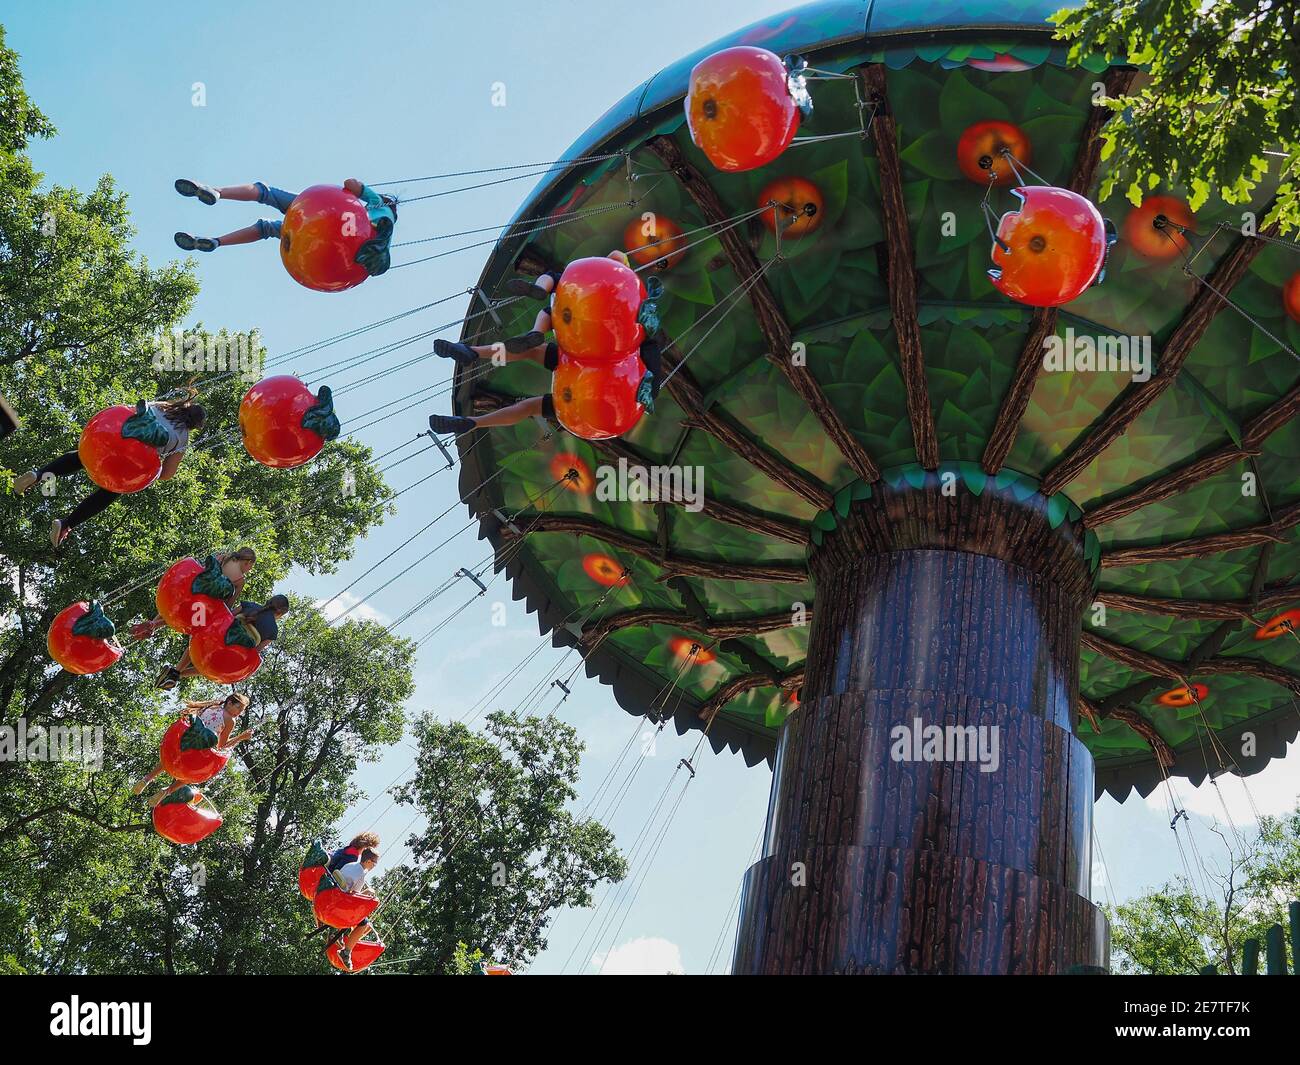 ST. MARGARETHEN, AUTRICHE - 8 juin 2017 : le carrousel d'oscillation Apfelflug. Attraction à Familypark, le parc d'attractions de la région du Burgenland. Banque D'Images